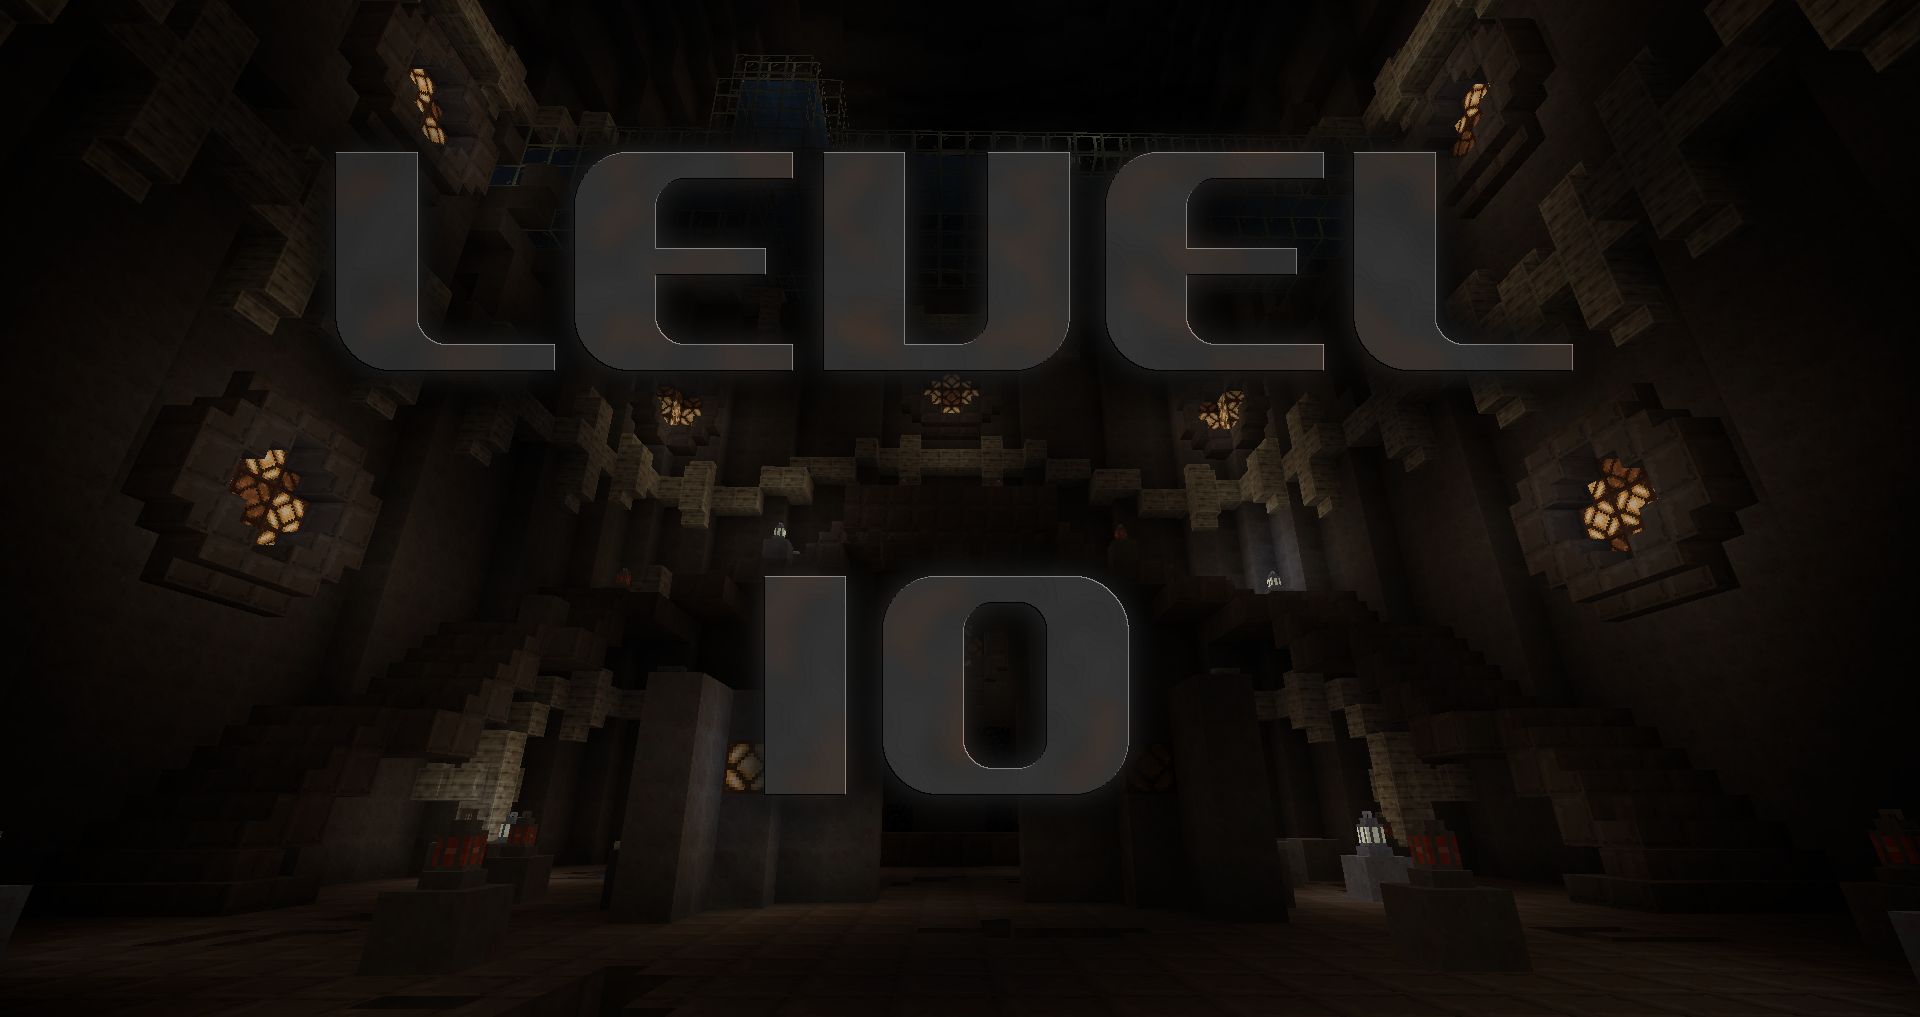 Unduh Level 10 untuk Minecraft 1.16